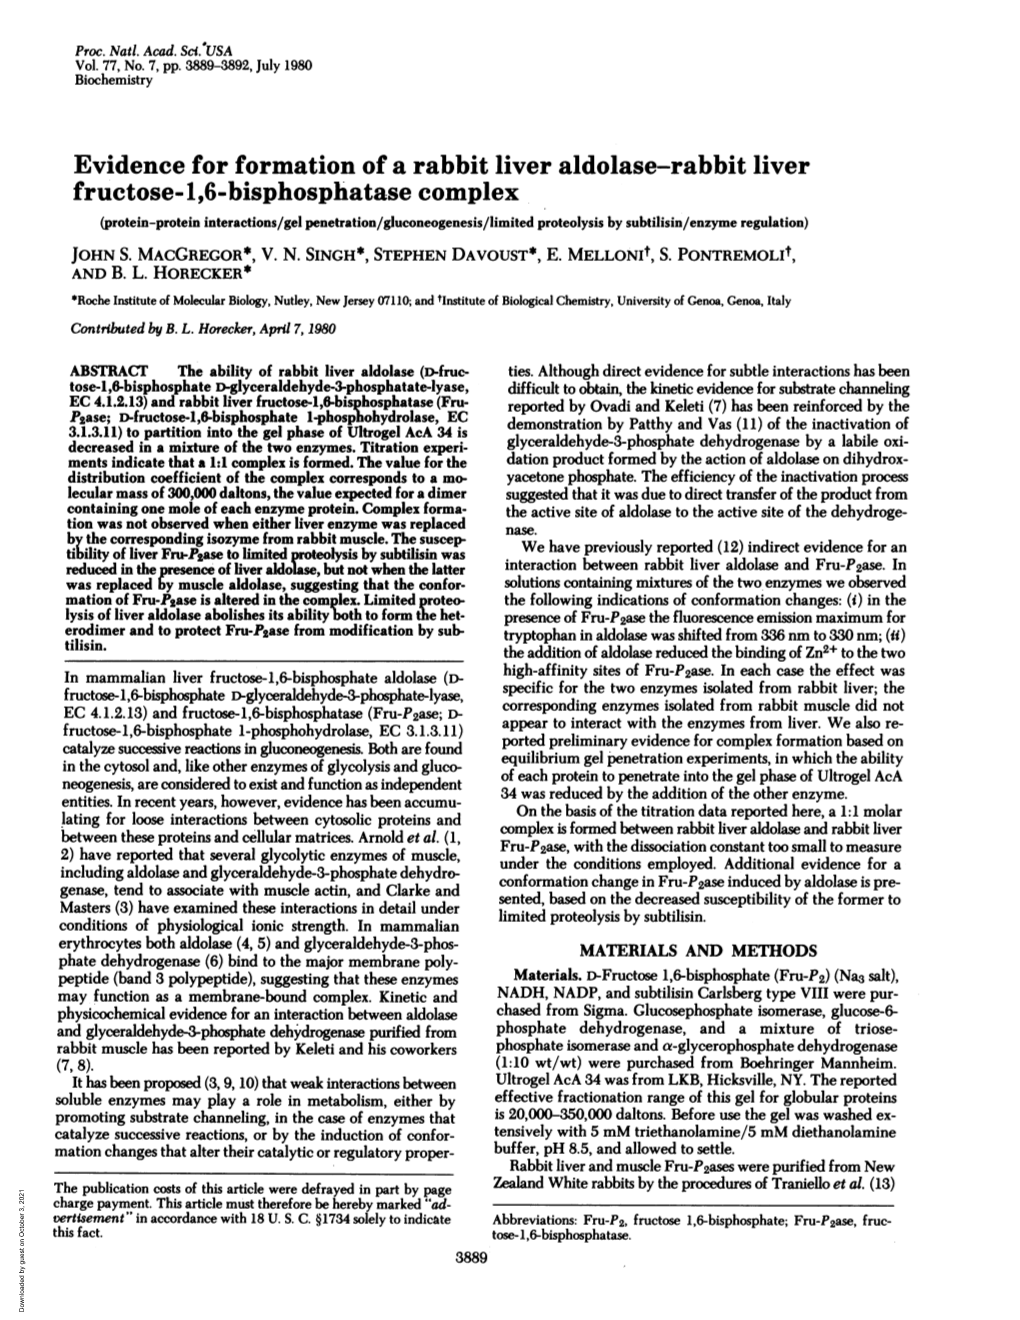 Evidence for Formation of a Rabbit Liver Aldolase-Rabbit Liver Fructose-1,6